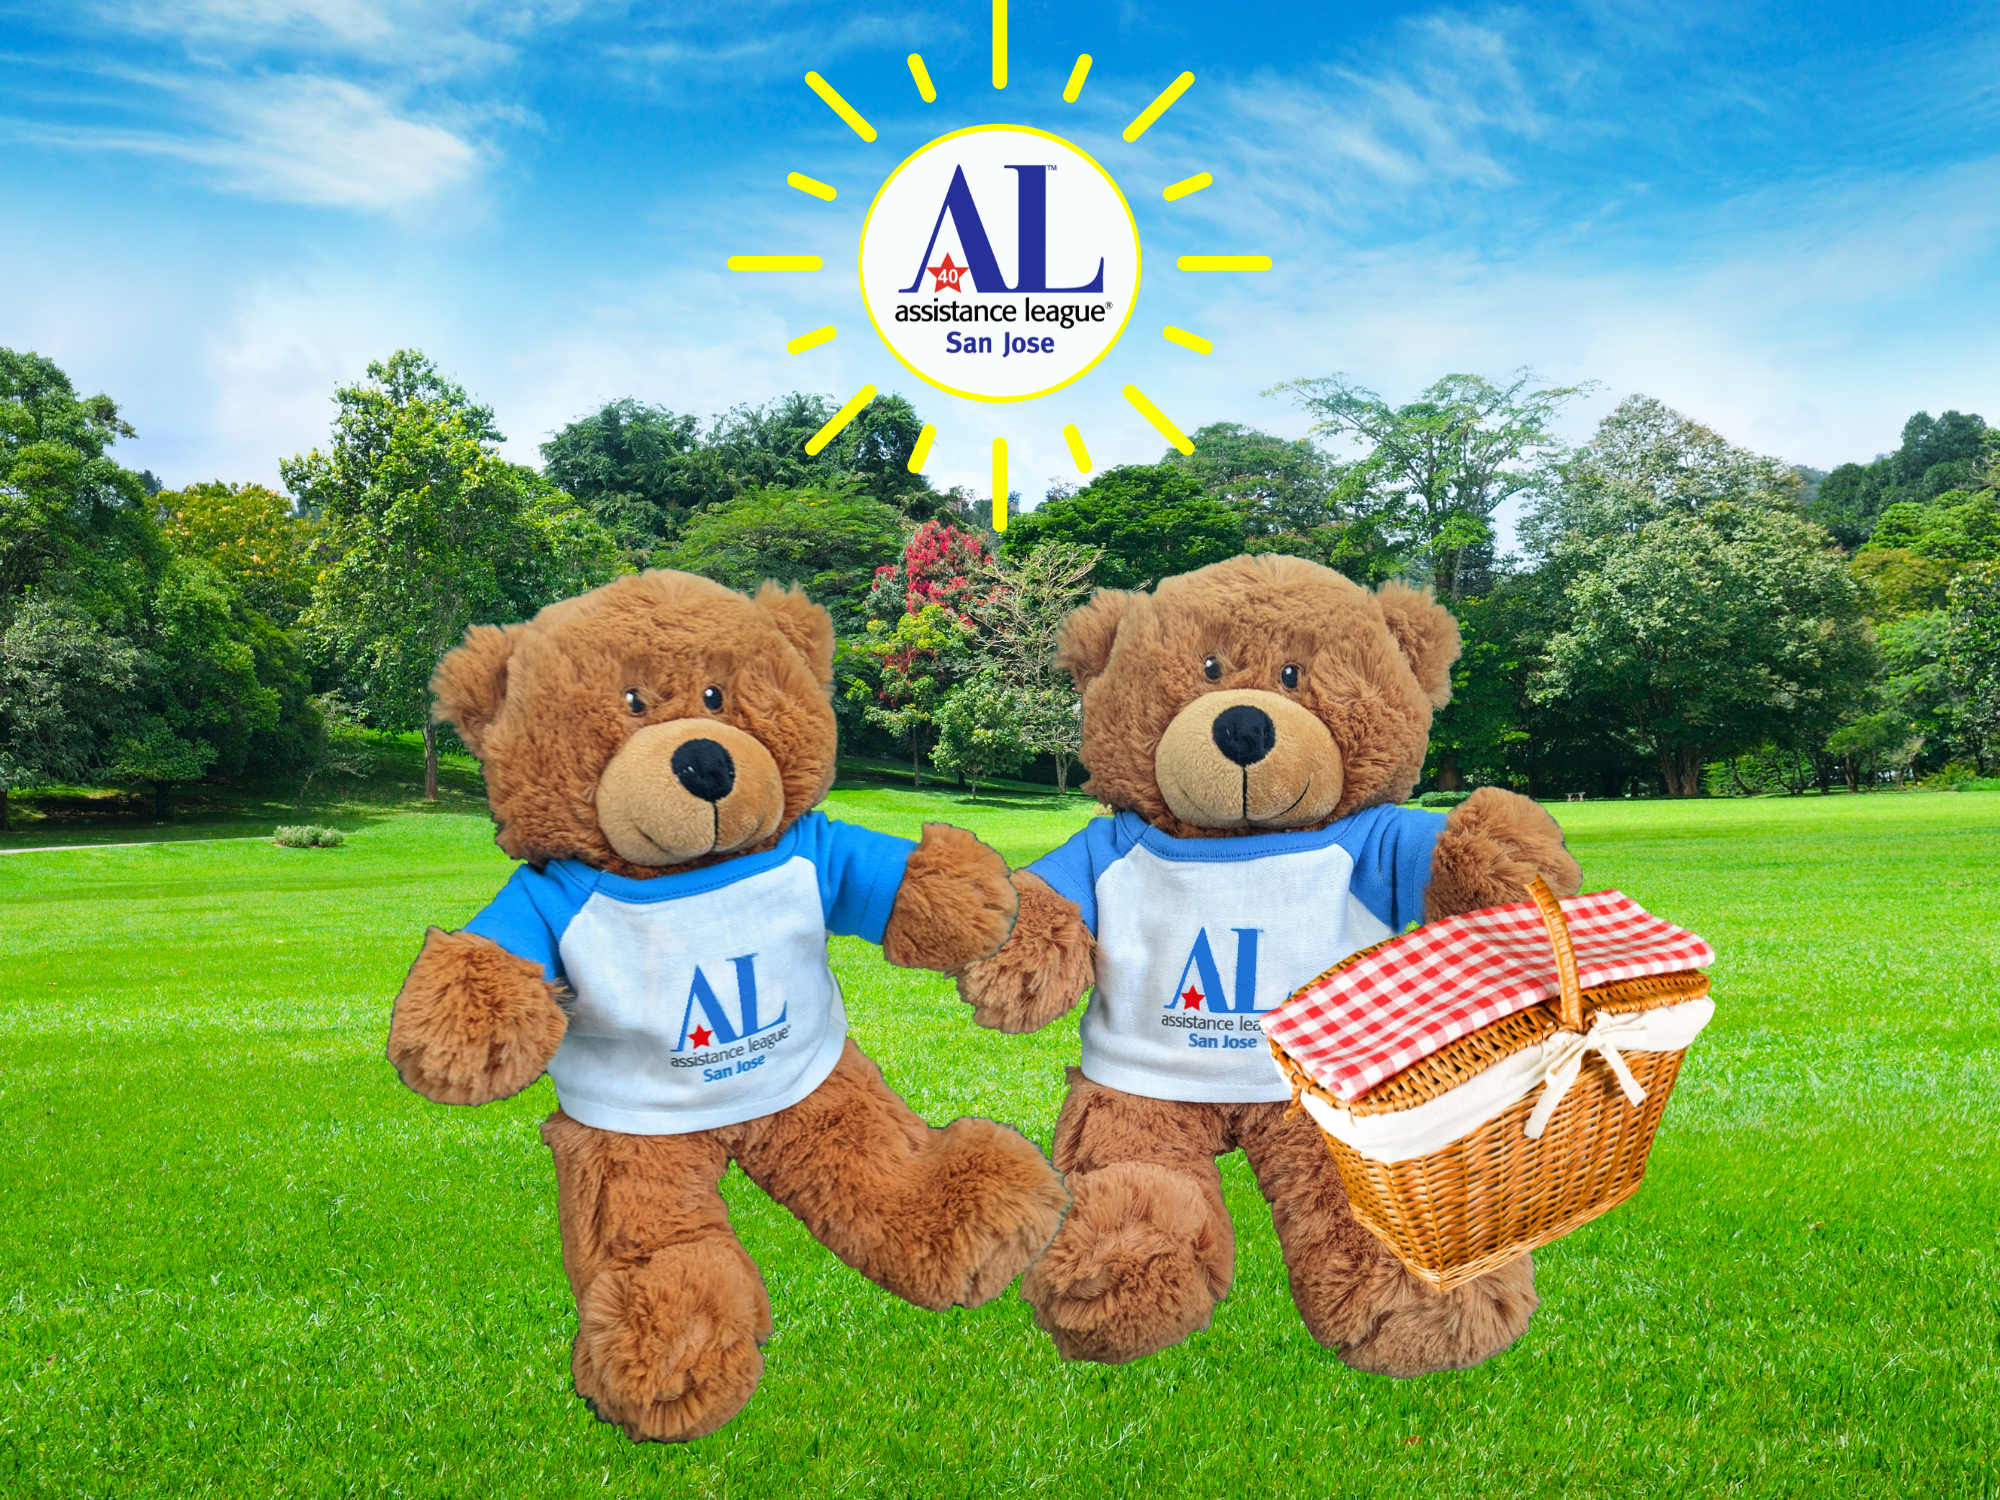 Hug-a-Bears going on a picnic